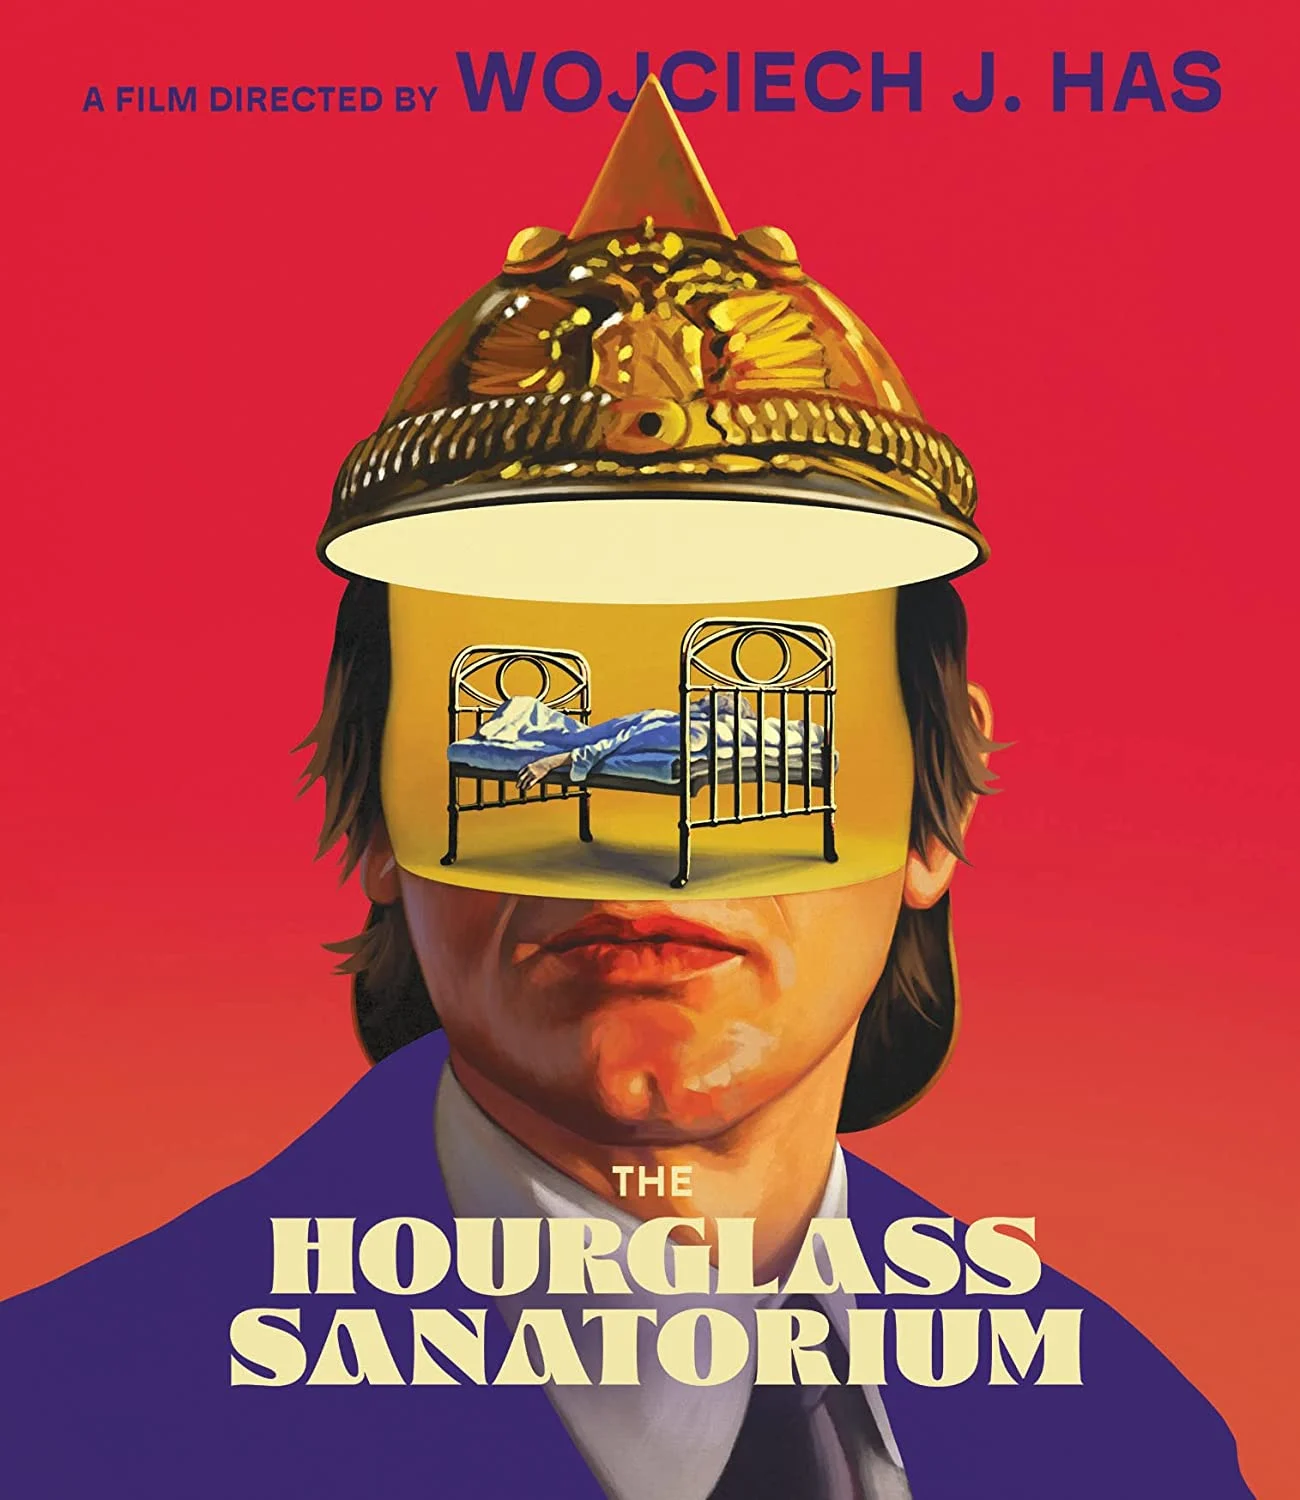 Hourglass Sanatorium (Blu-ray) on MovieShack